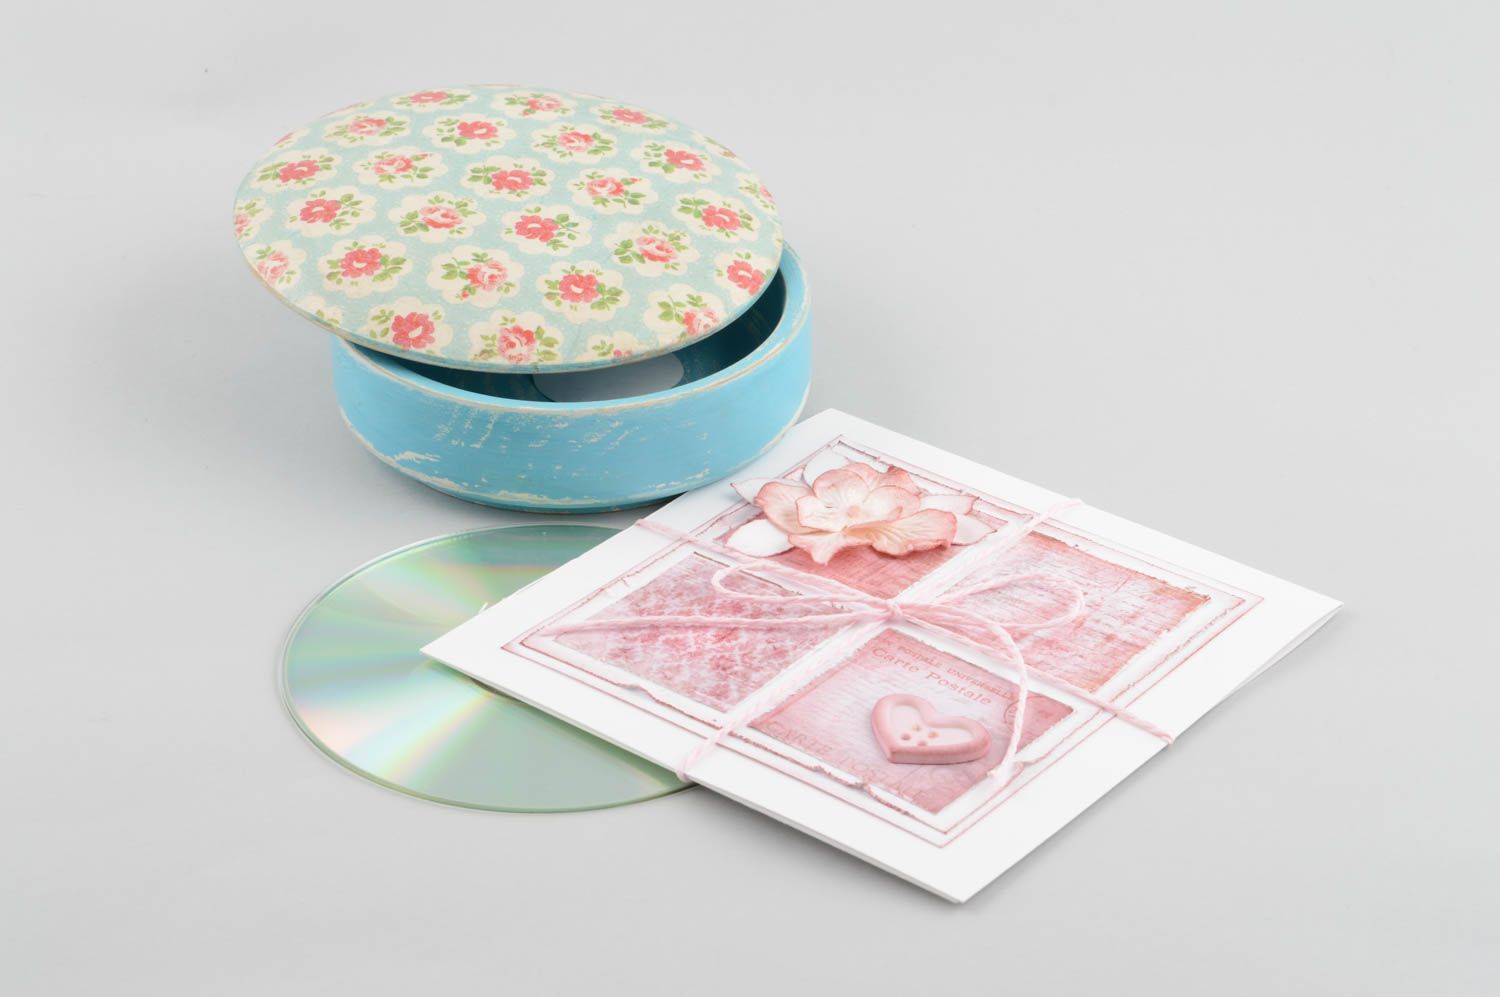 Handmade Papier CD Hülle kreatives Geschenk schöne Verpackung rosa hübsch foto 1